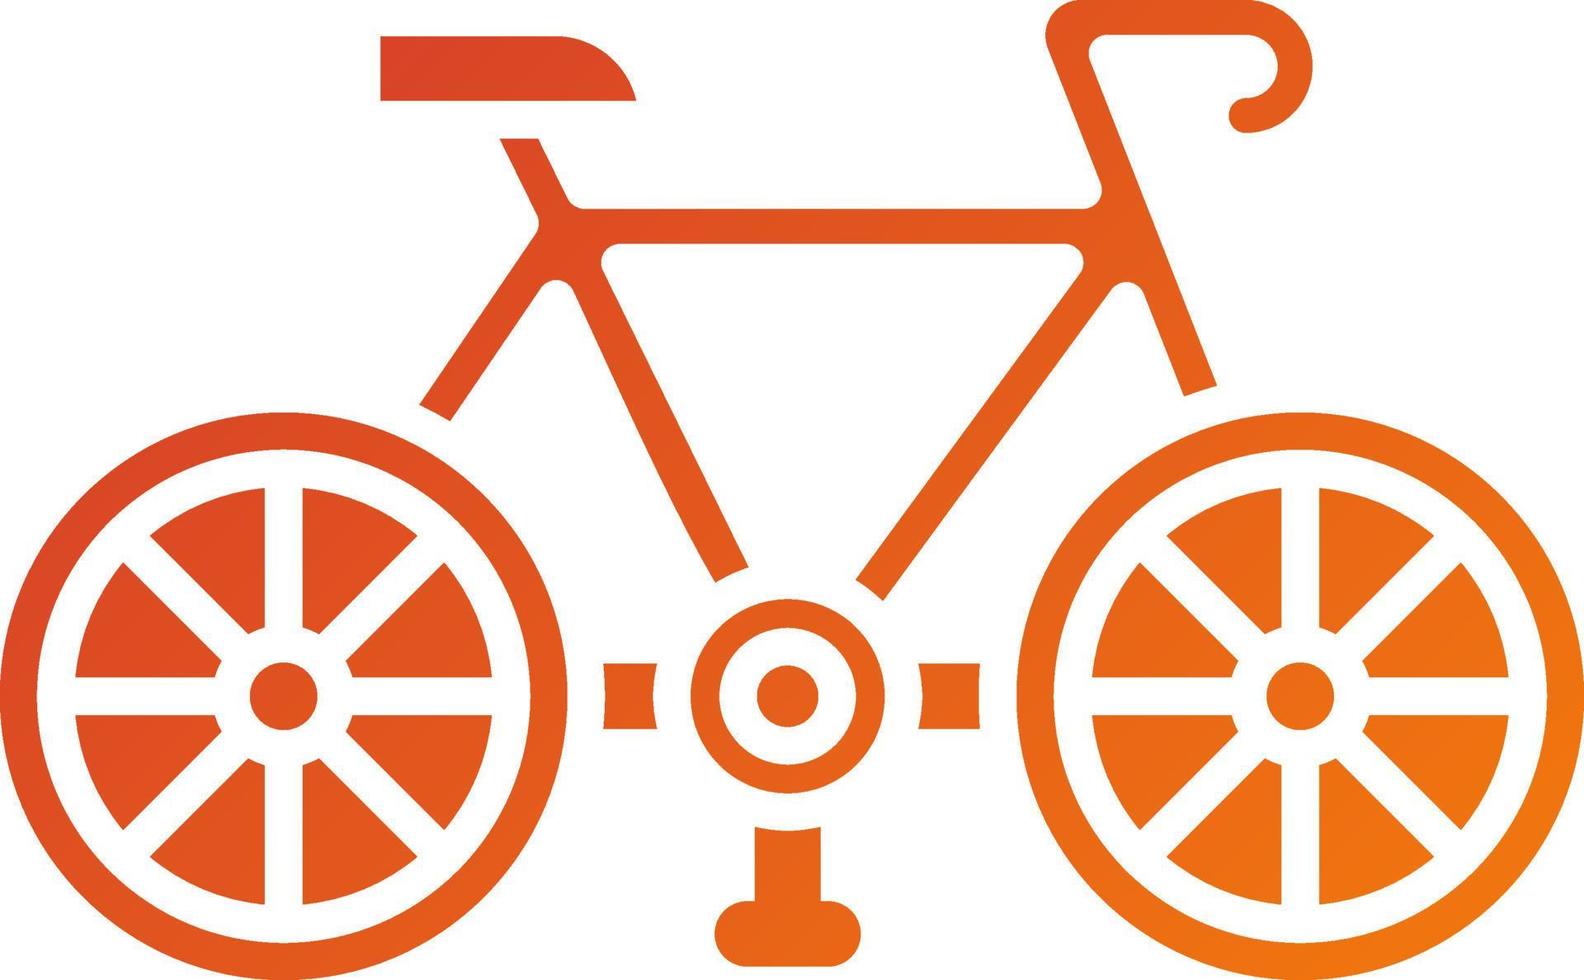 fiets icoon stijl vector